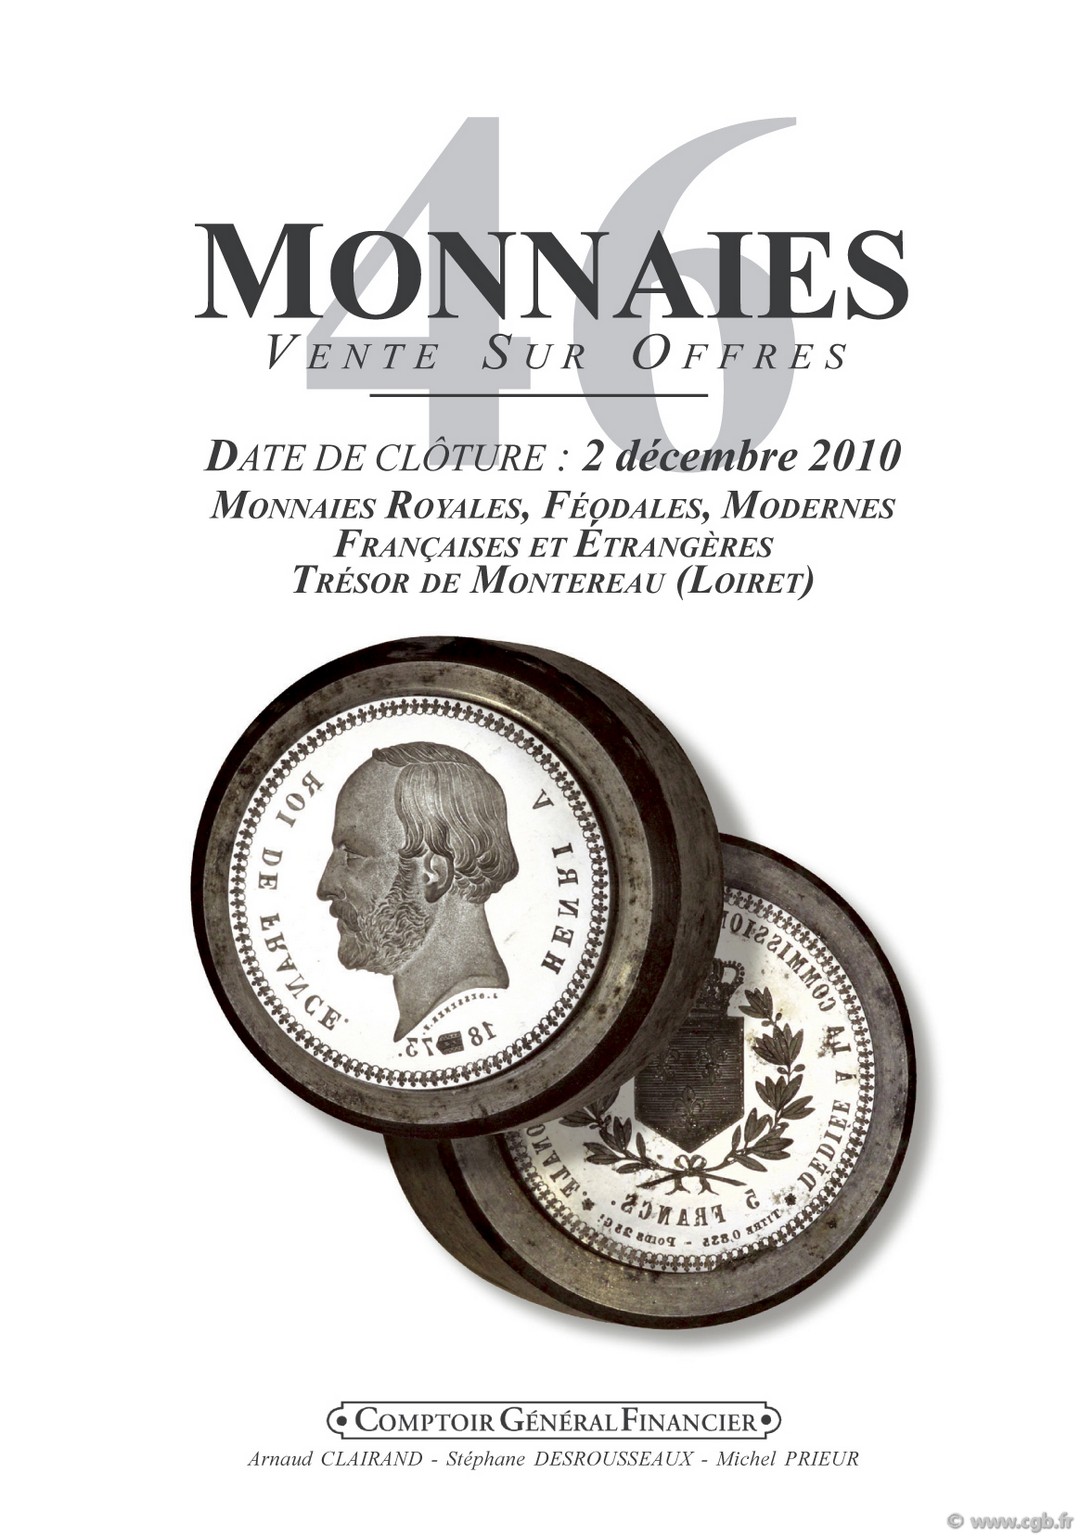 Monnaies 46, monnaies royales et modernes CLAIRAND Arnaud, DESROUSSEAUX Stéphane, PRIEUR Michel 